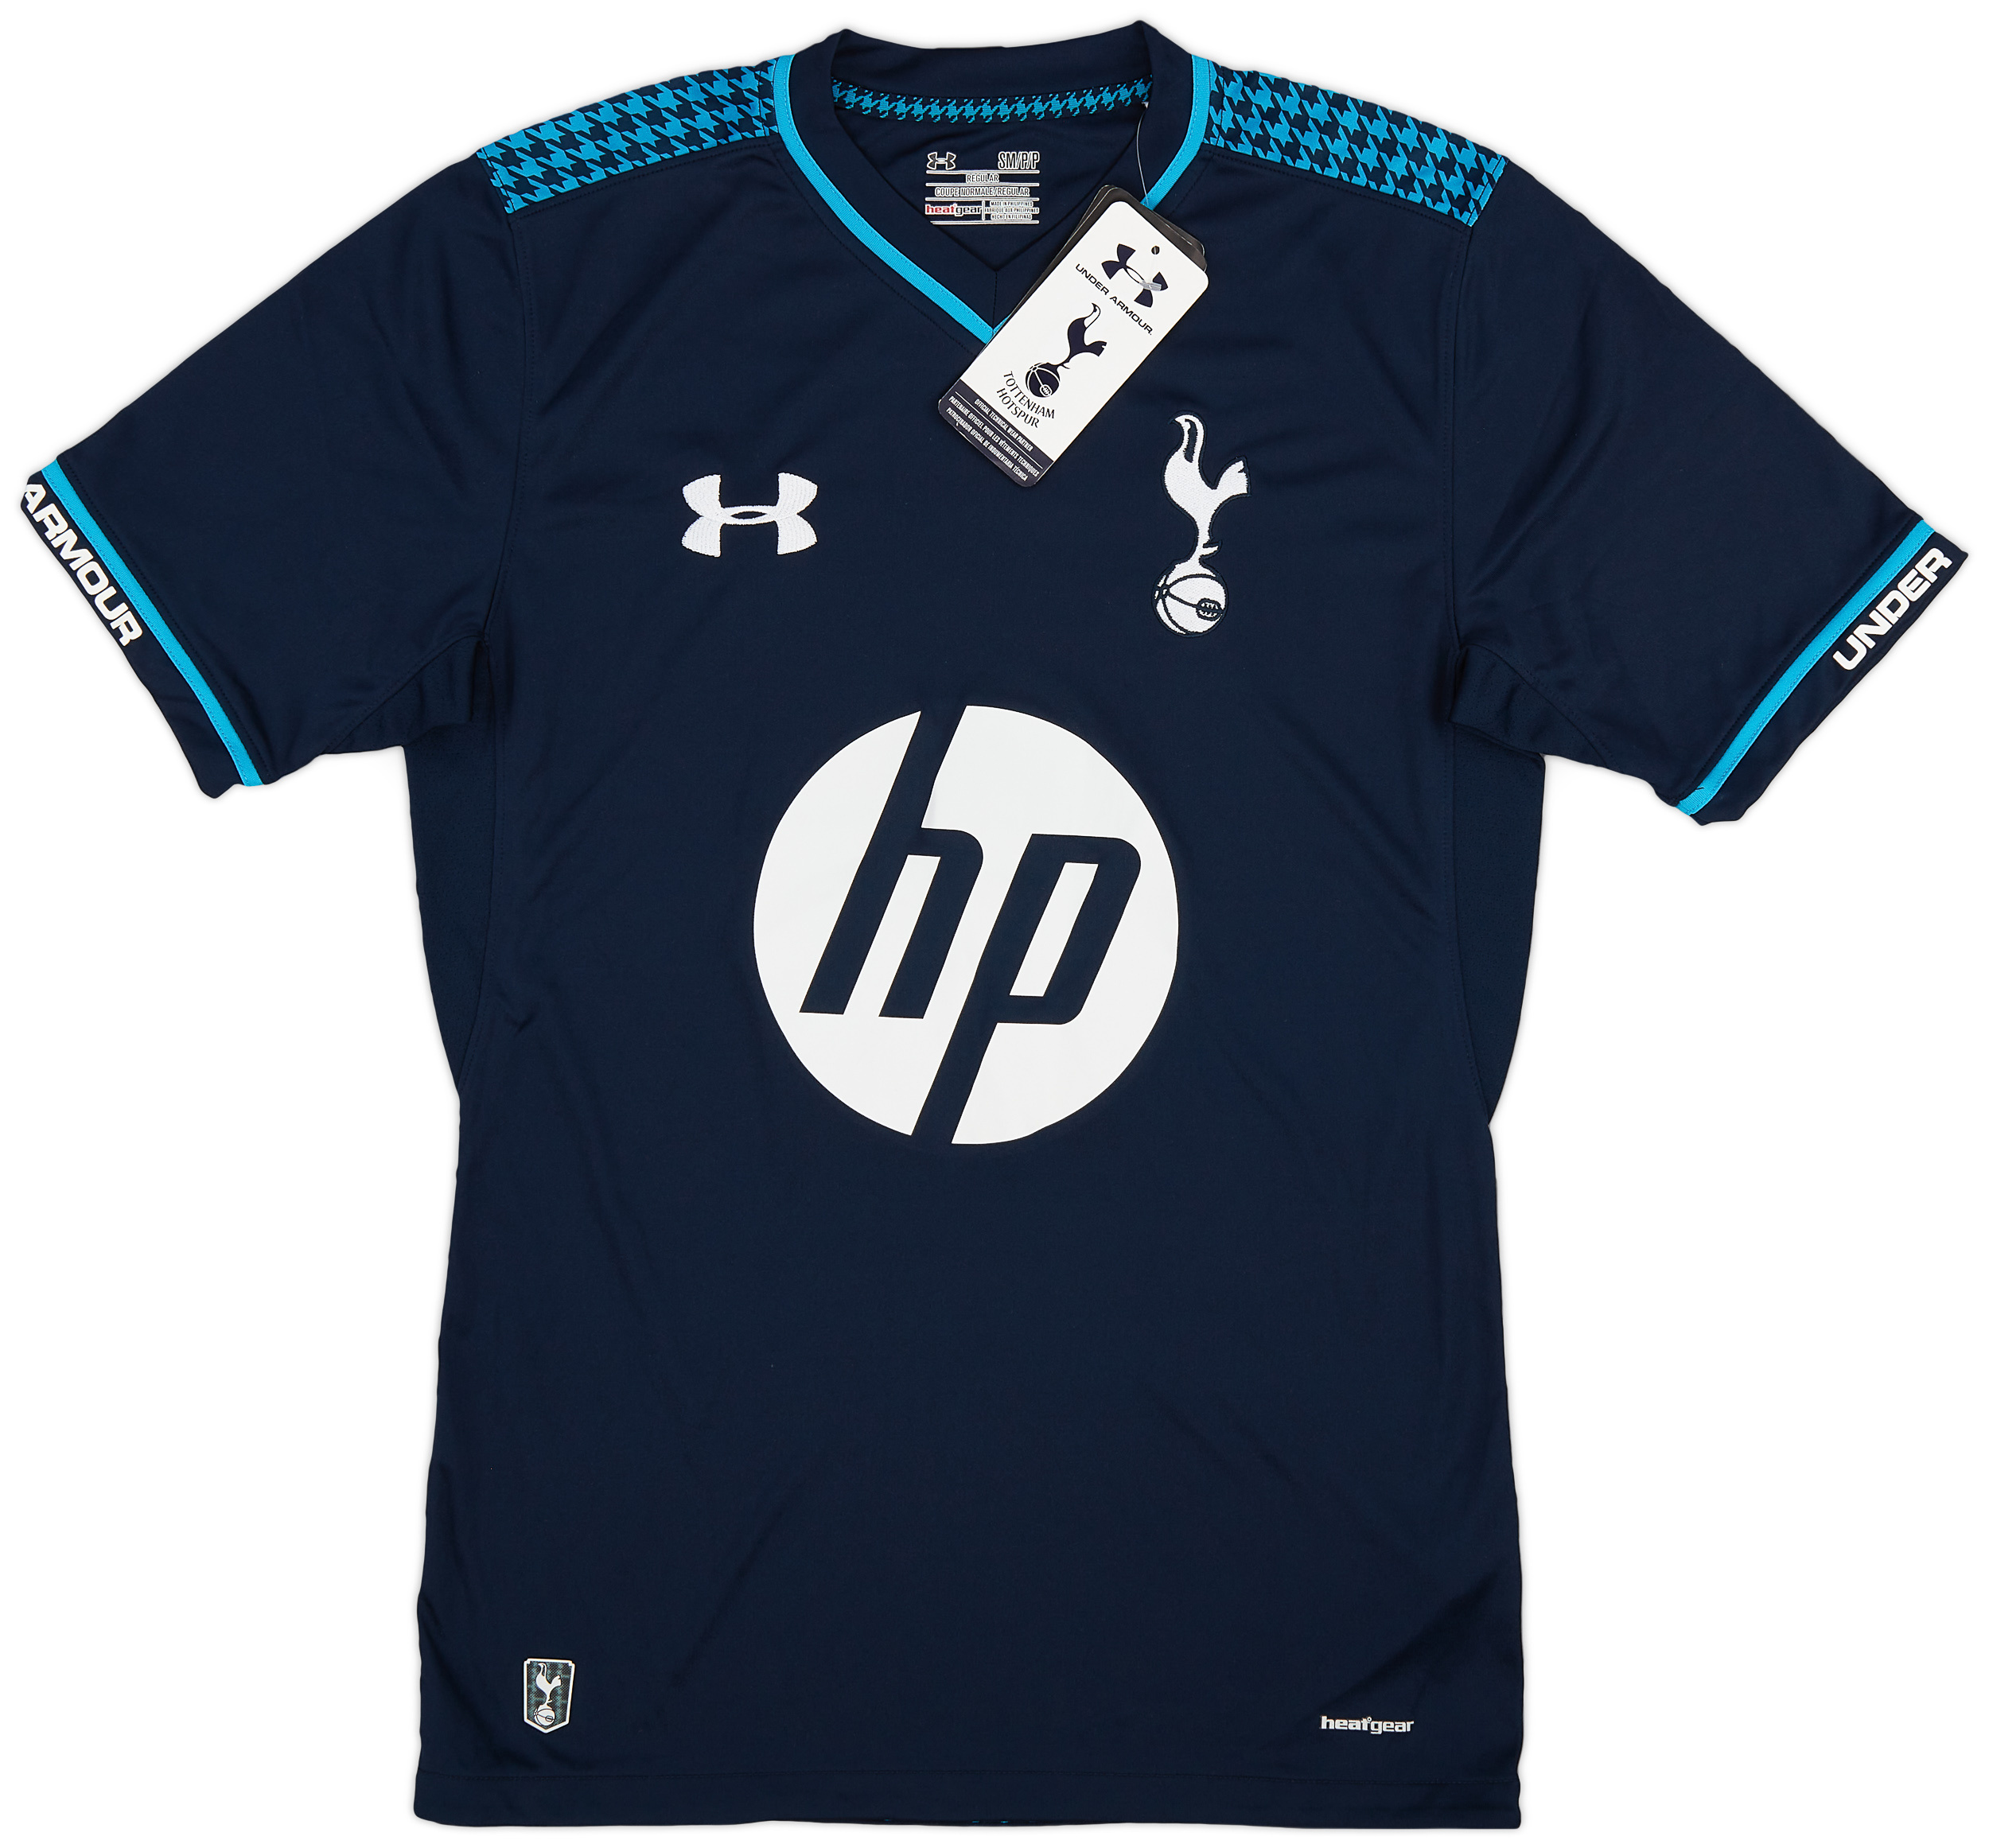 Tottenham Hotspur  Derden  shirt  (Original)